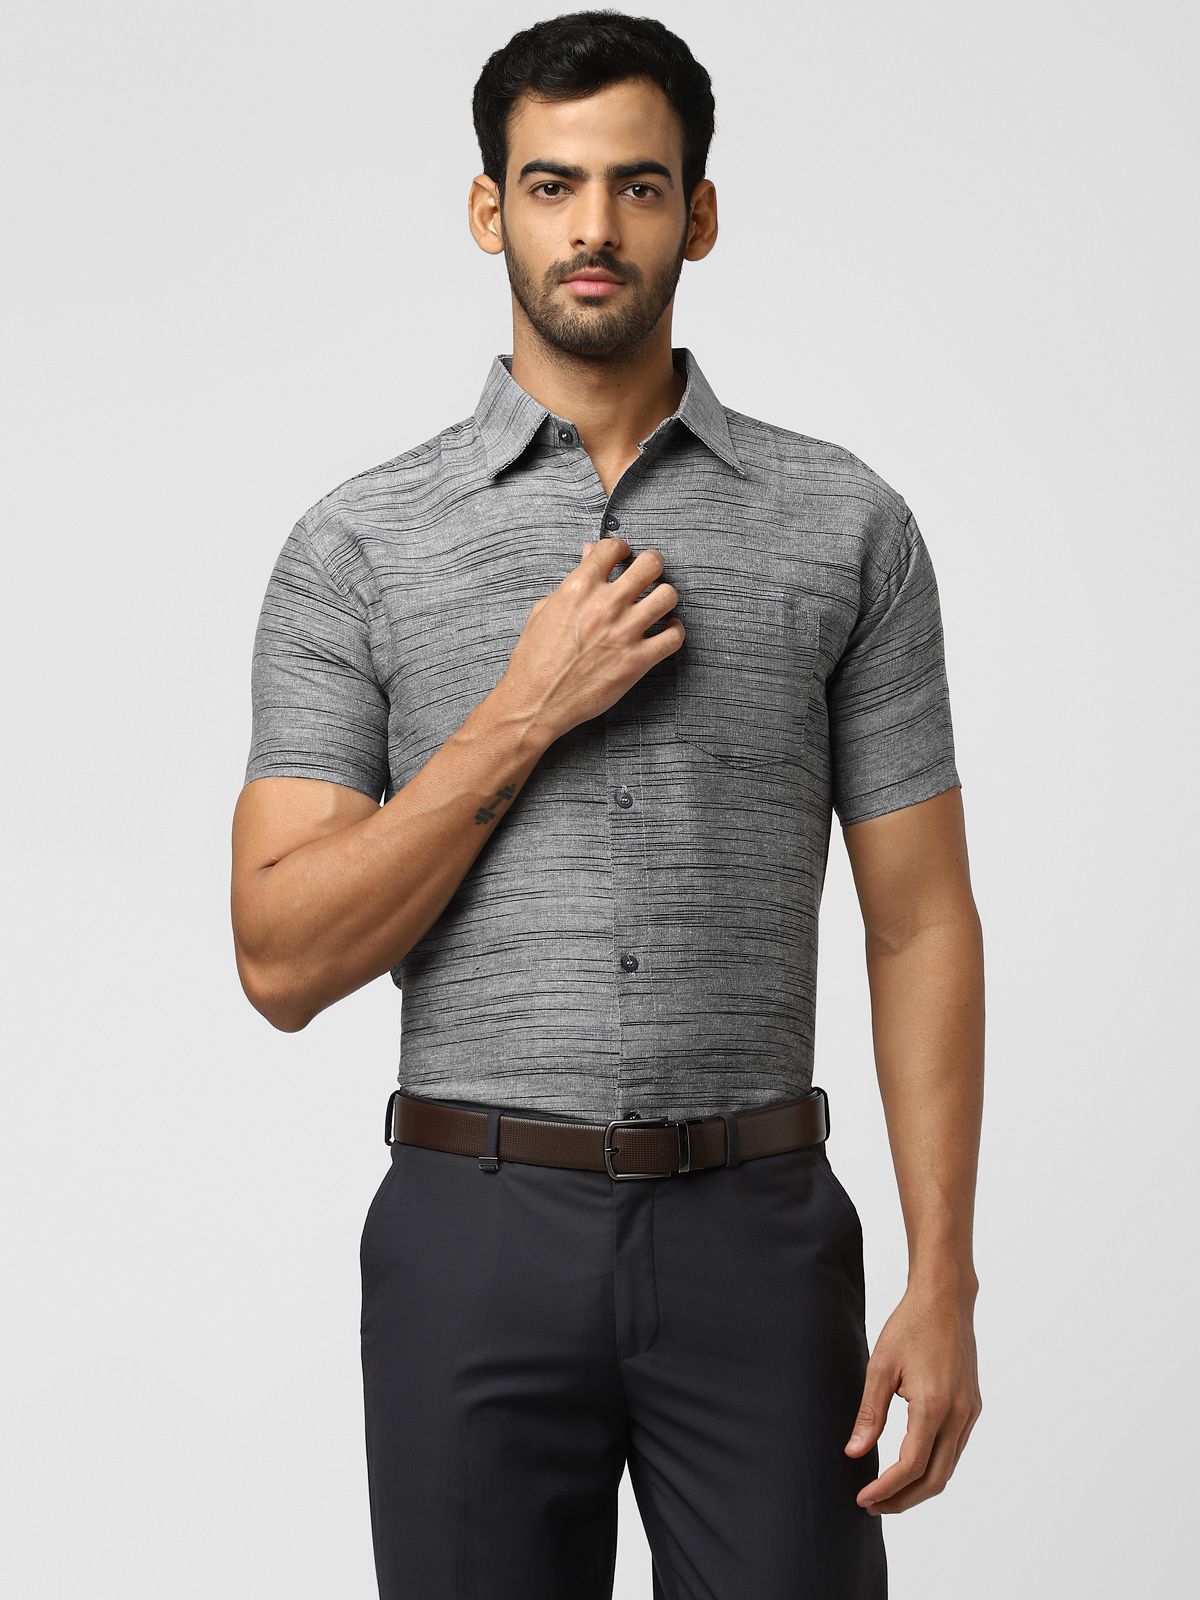     			DESHBANDHU DBK - Grey Cotton Regular Fit Men's Formal Shirt ( Pack of 1 )